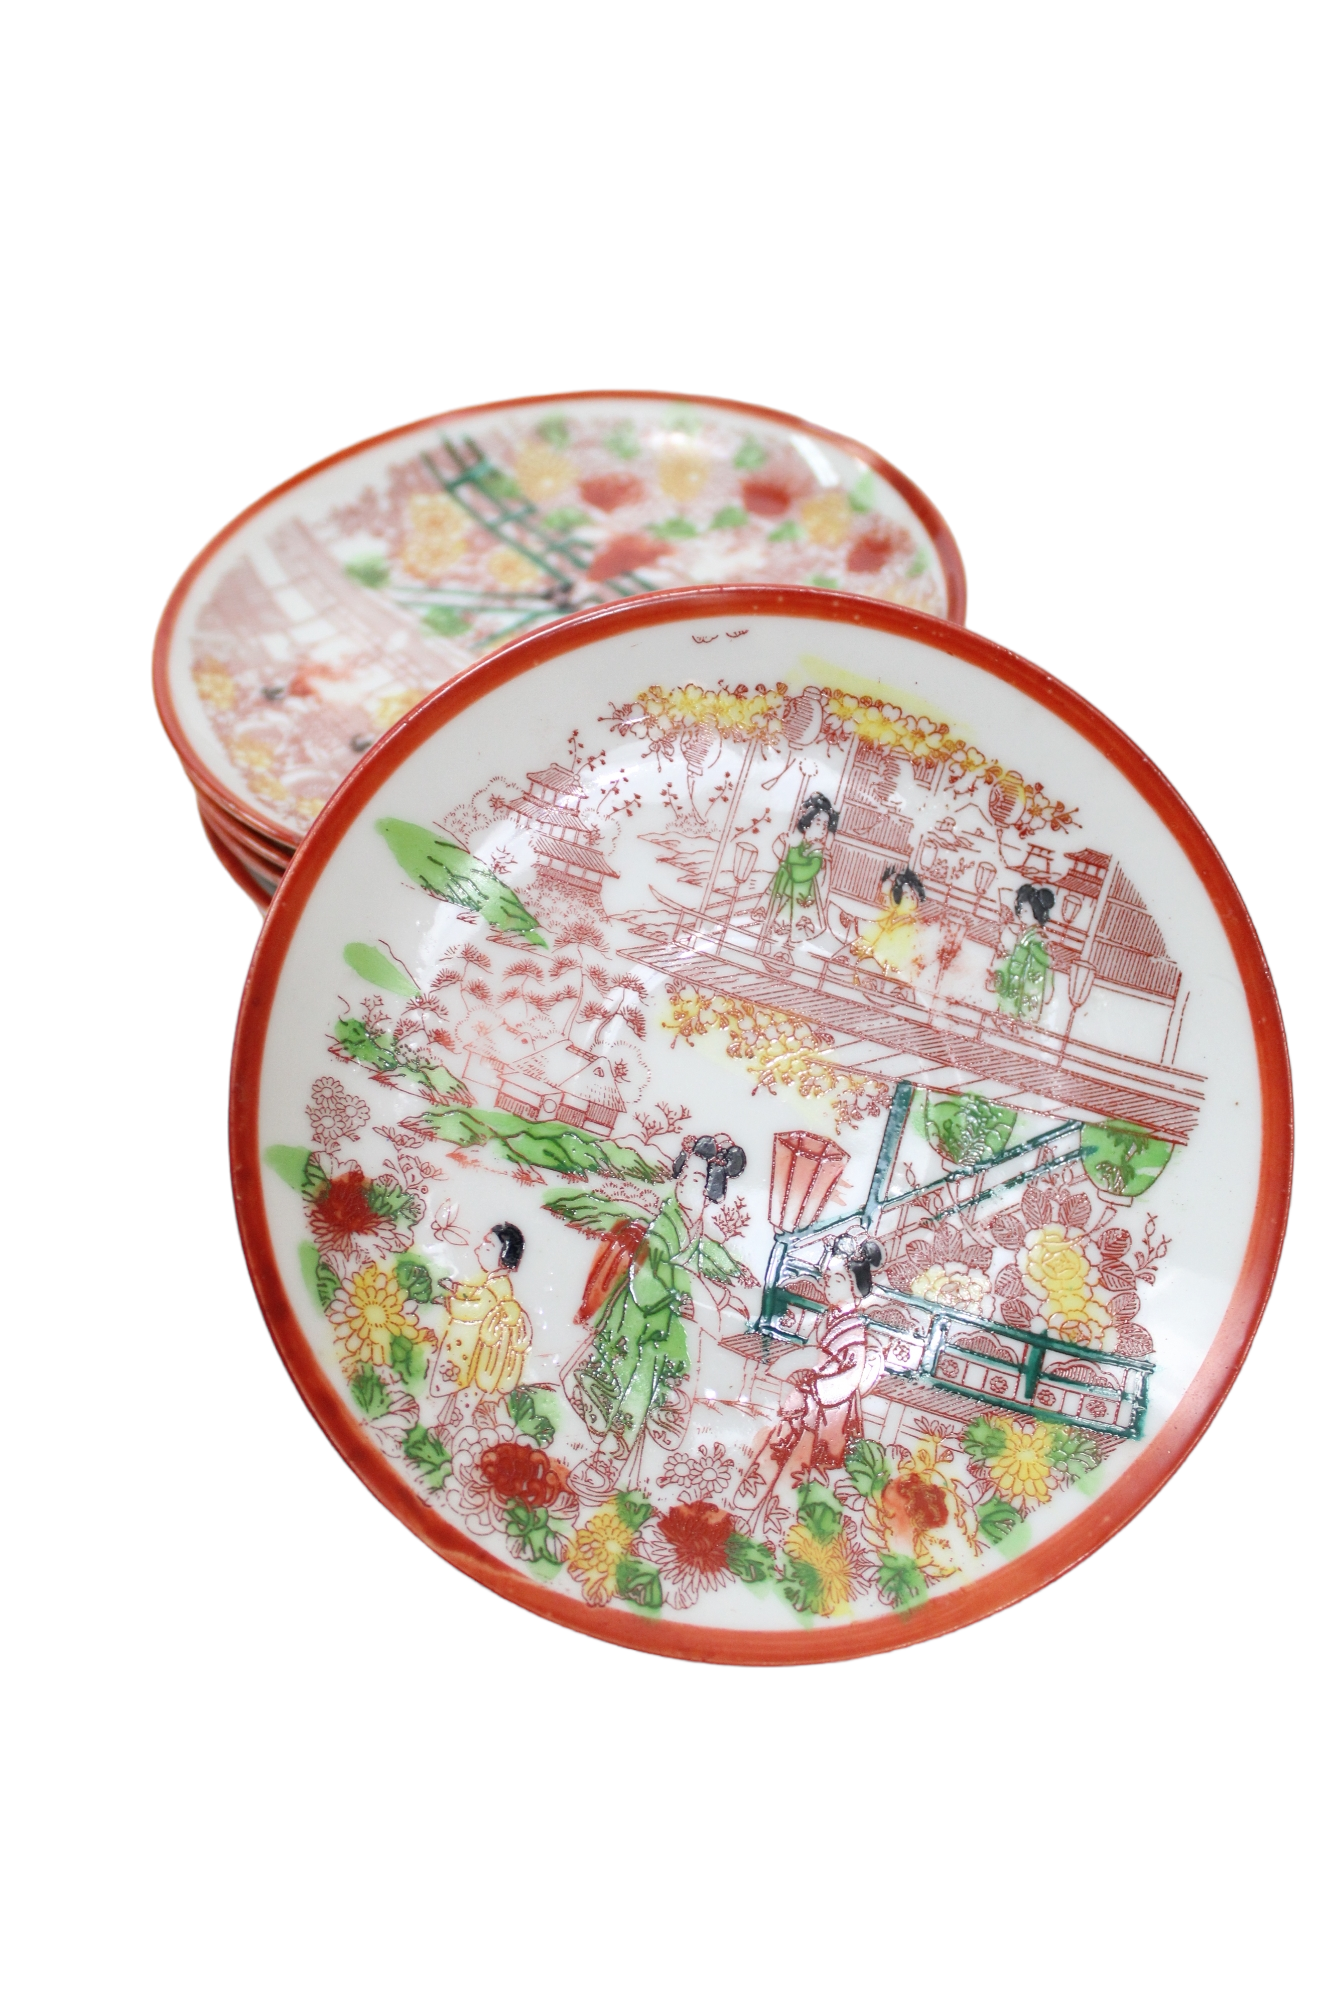 Vintage Geisha Teacup & Saucers | Set Of 7